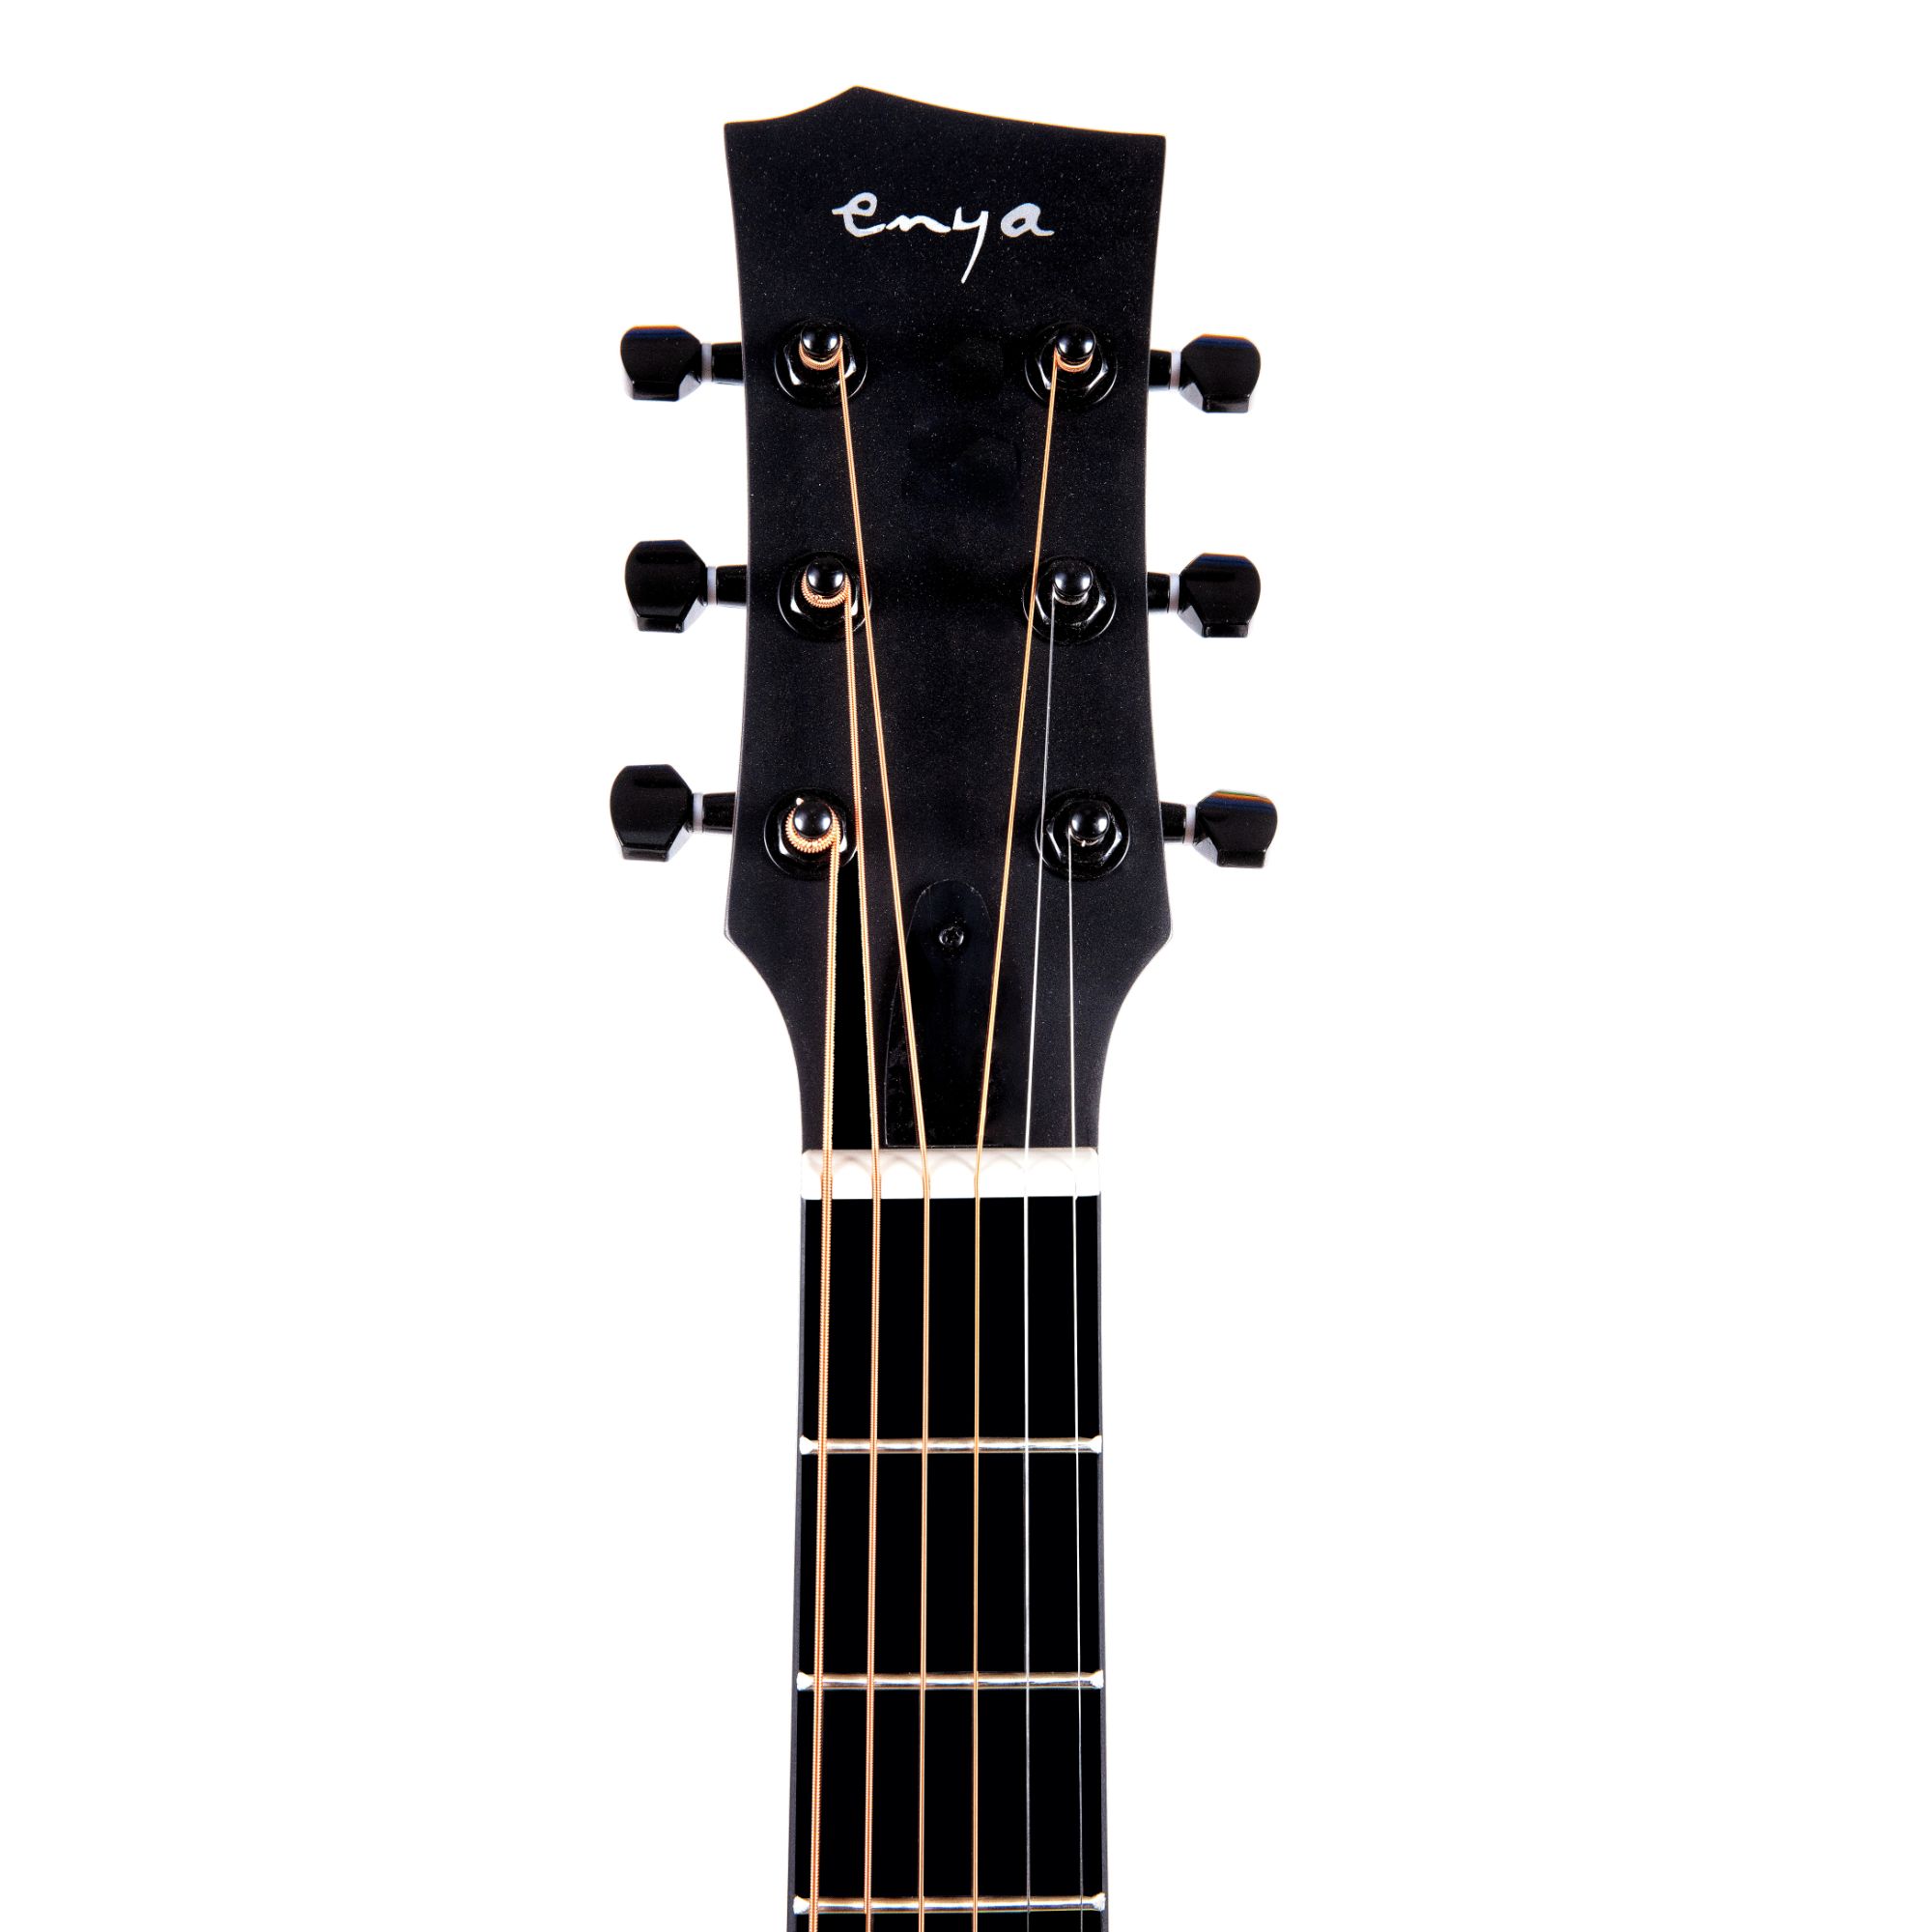 Enya EA X0 EQ Transacoustic Grand Auditorium Acoustic Guitar Online price in India